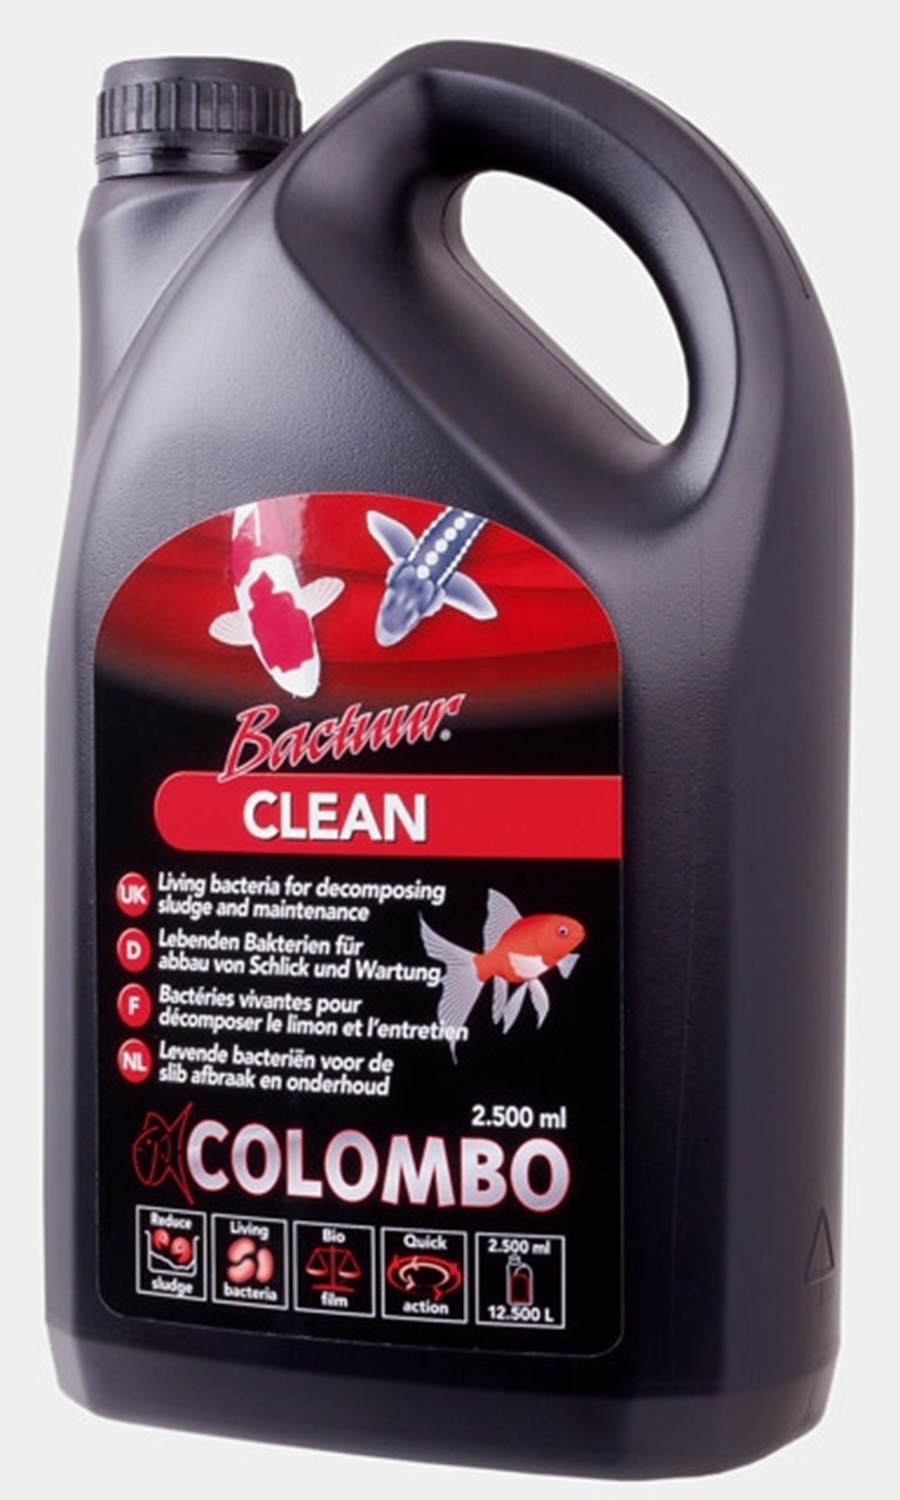 COLOMBO BACTUUR CLEAN SLUDGE 500ML  pour 2500 litres